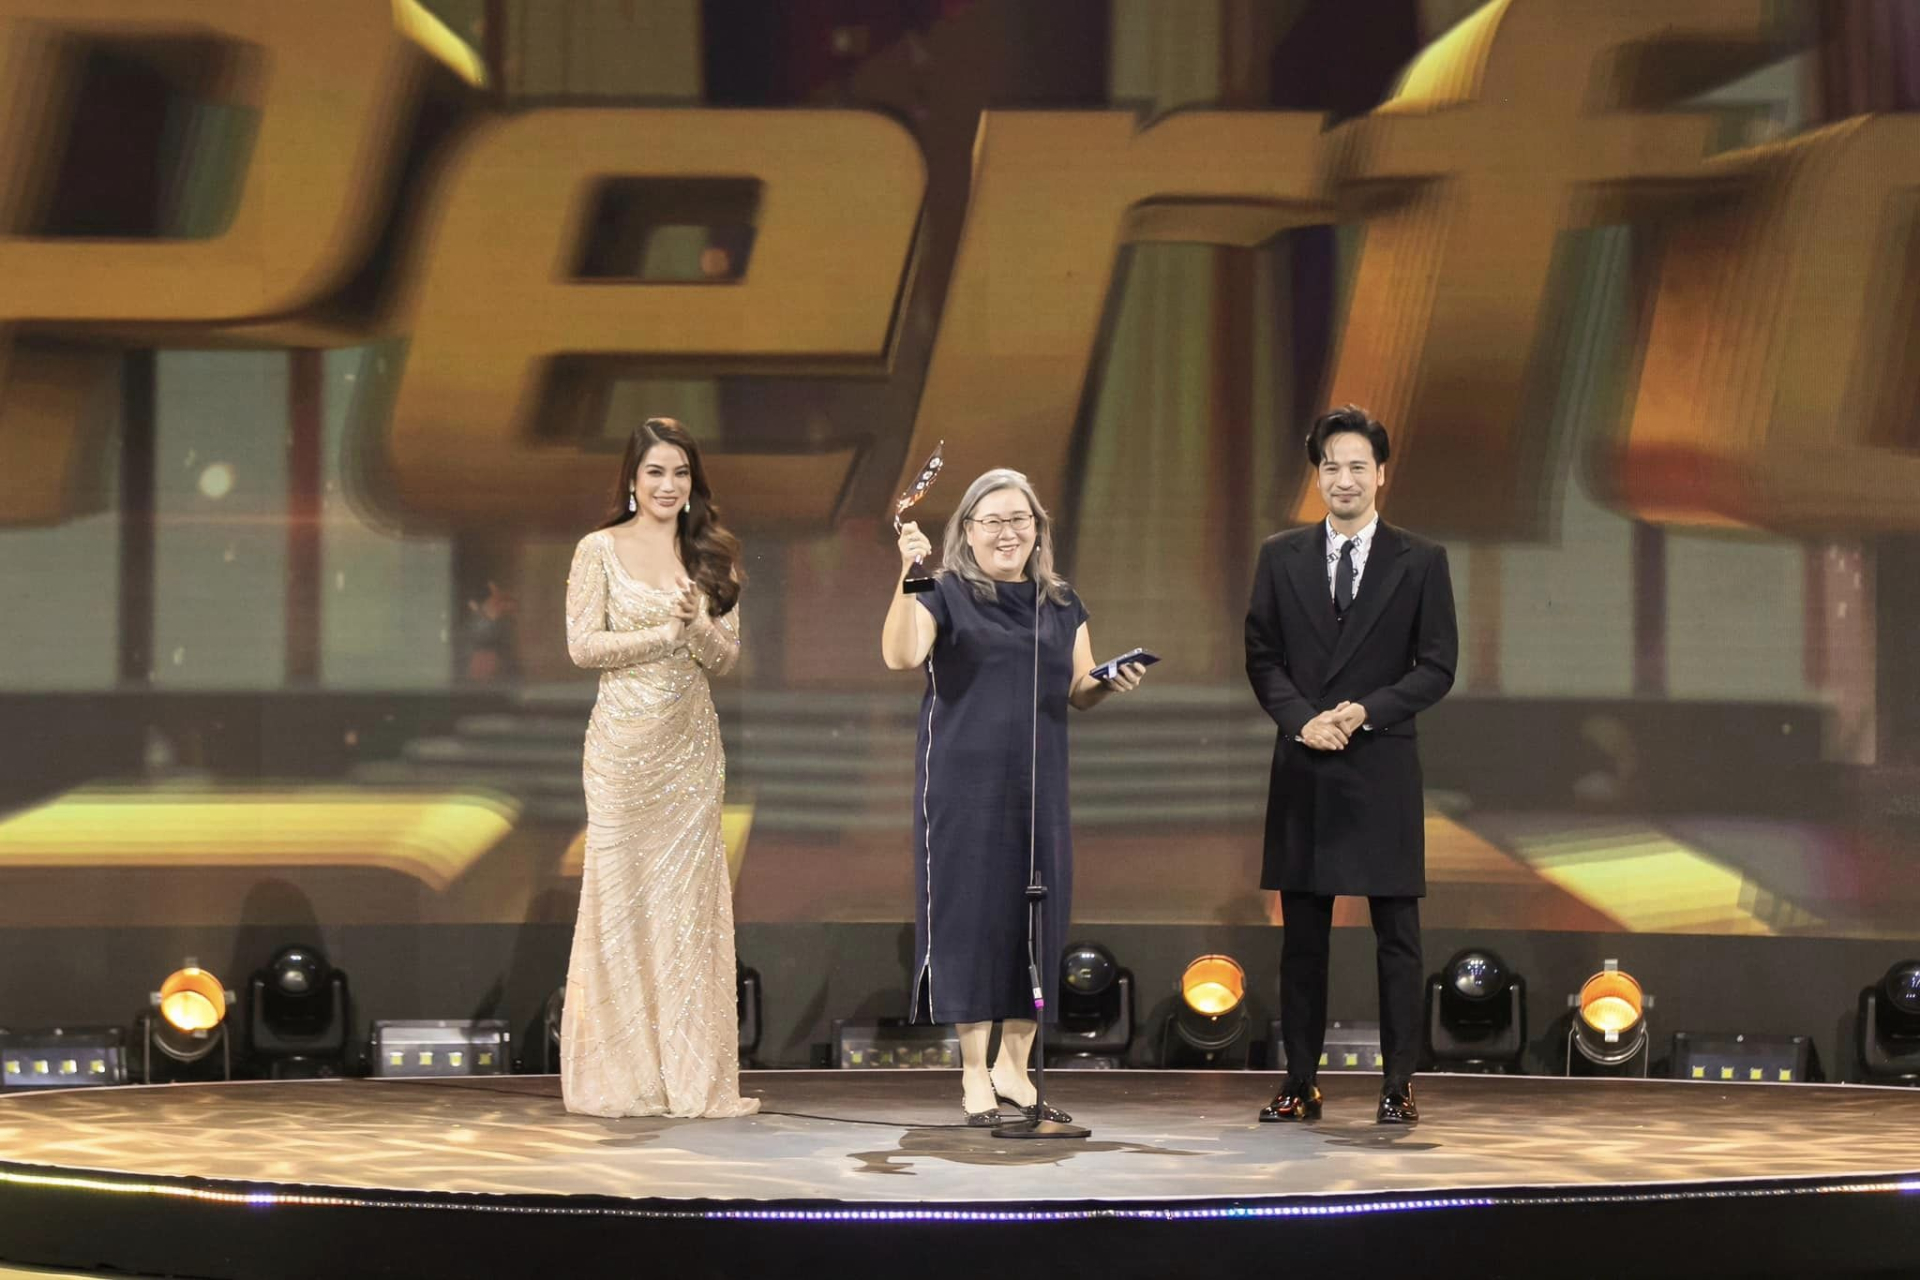 Đoàn Minh Tài sánh đôi cùng Trương Ngọc Ánh, Ngọc Thanh Tâm đại diện trao giải tại sự kiện ATA Asian Television Awards - ảnh 5